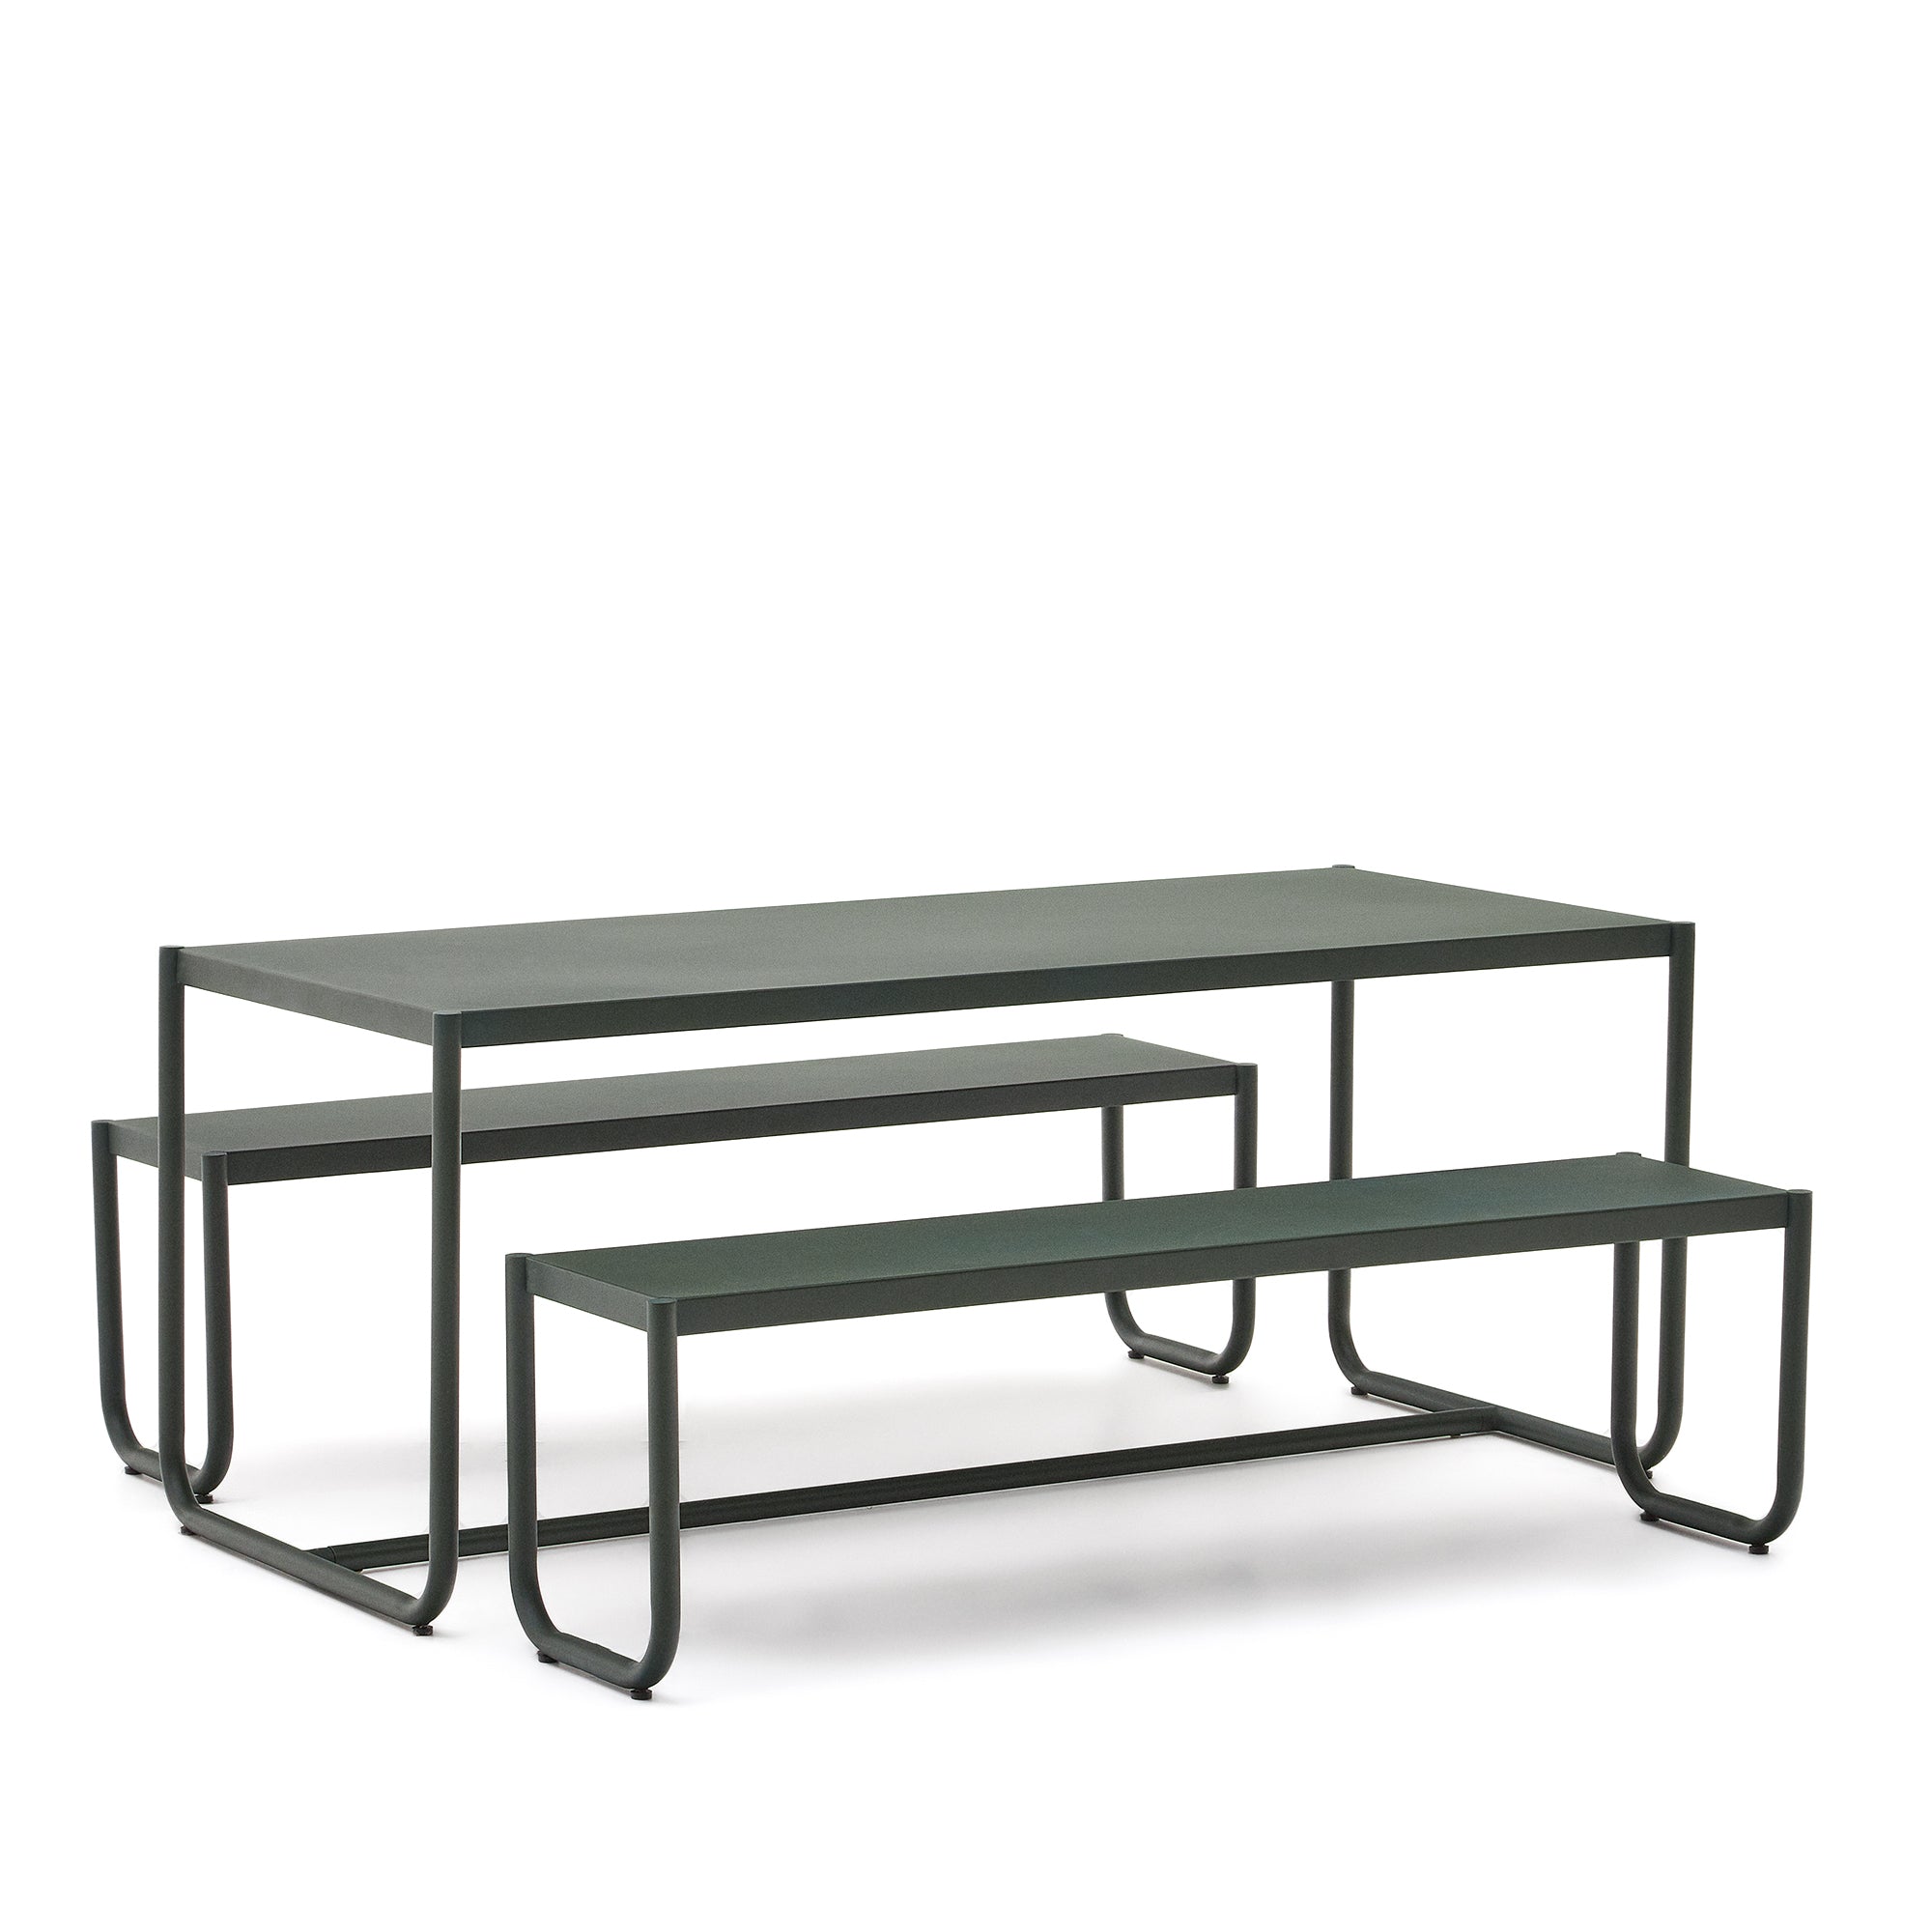 Sotil 2 pad és horganyzott acél asztal szett zöld befejezéssel 183 x 83 cm